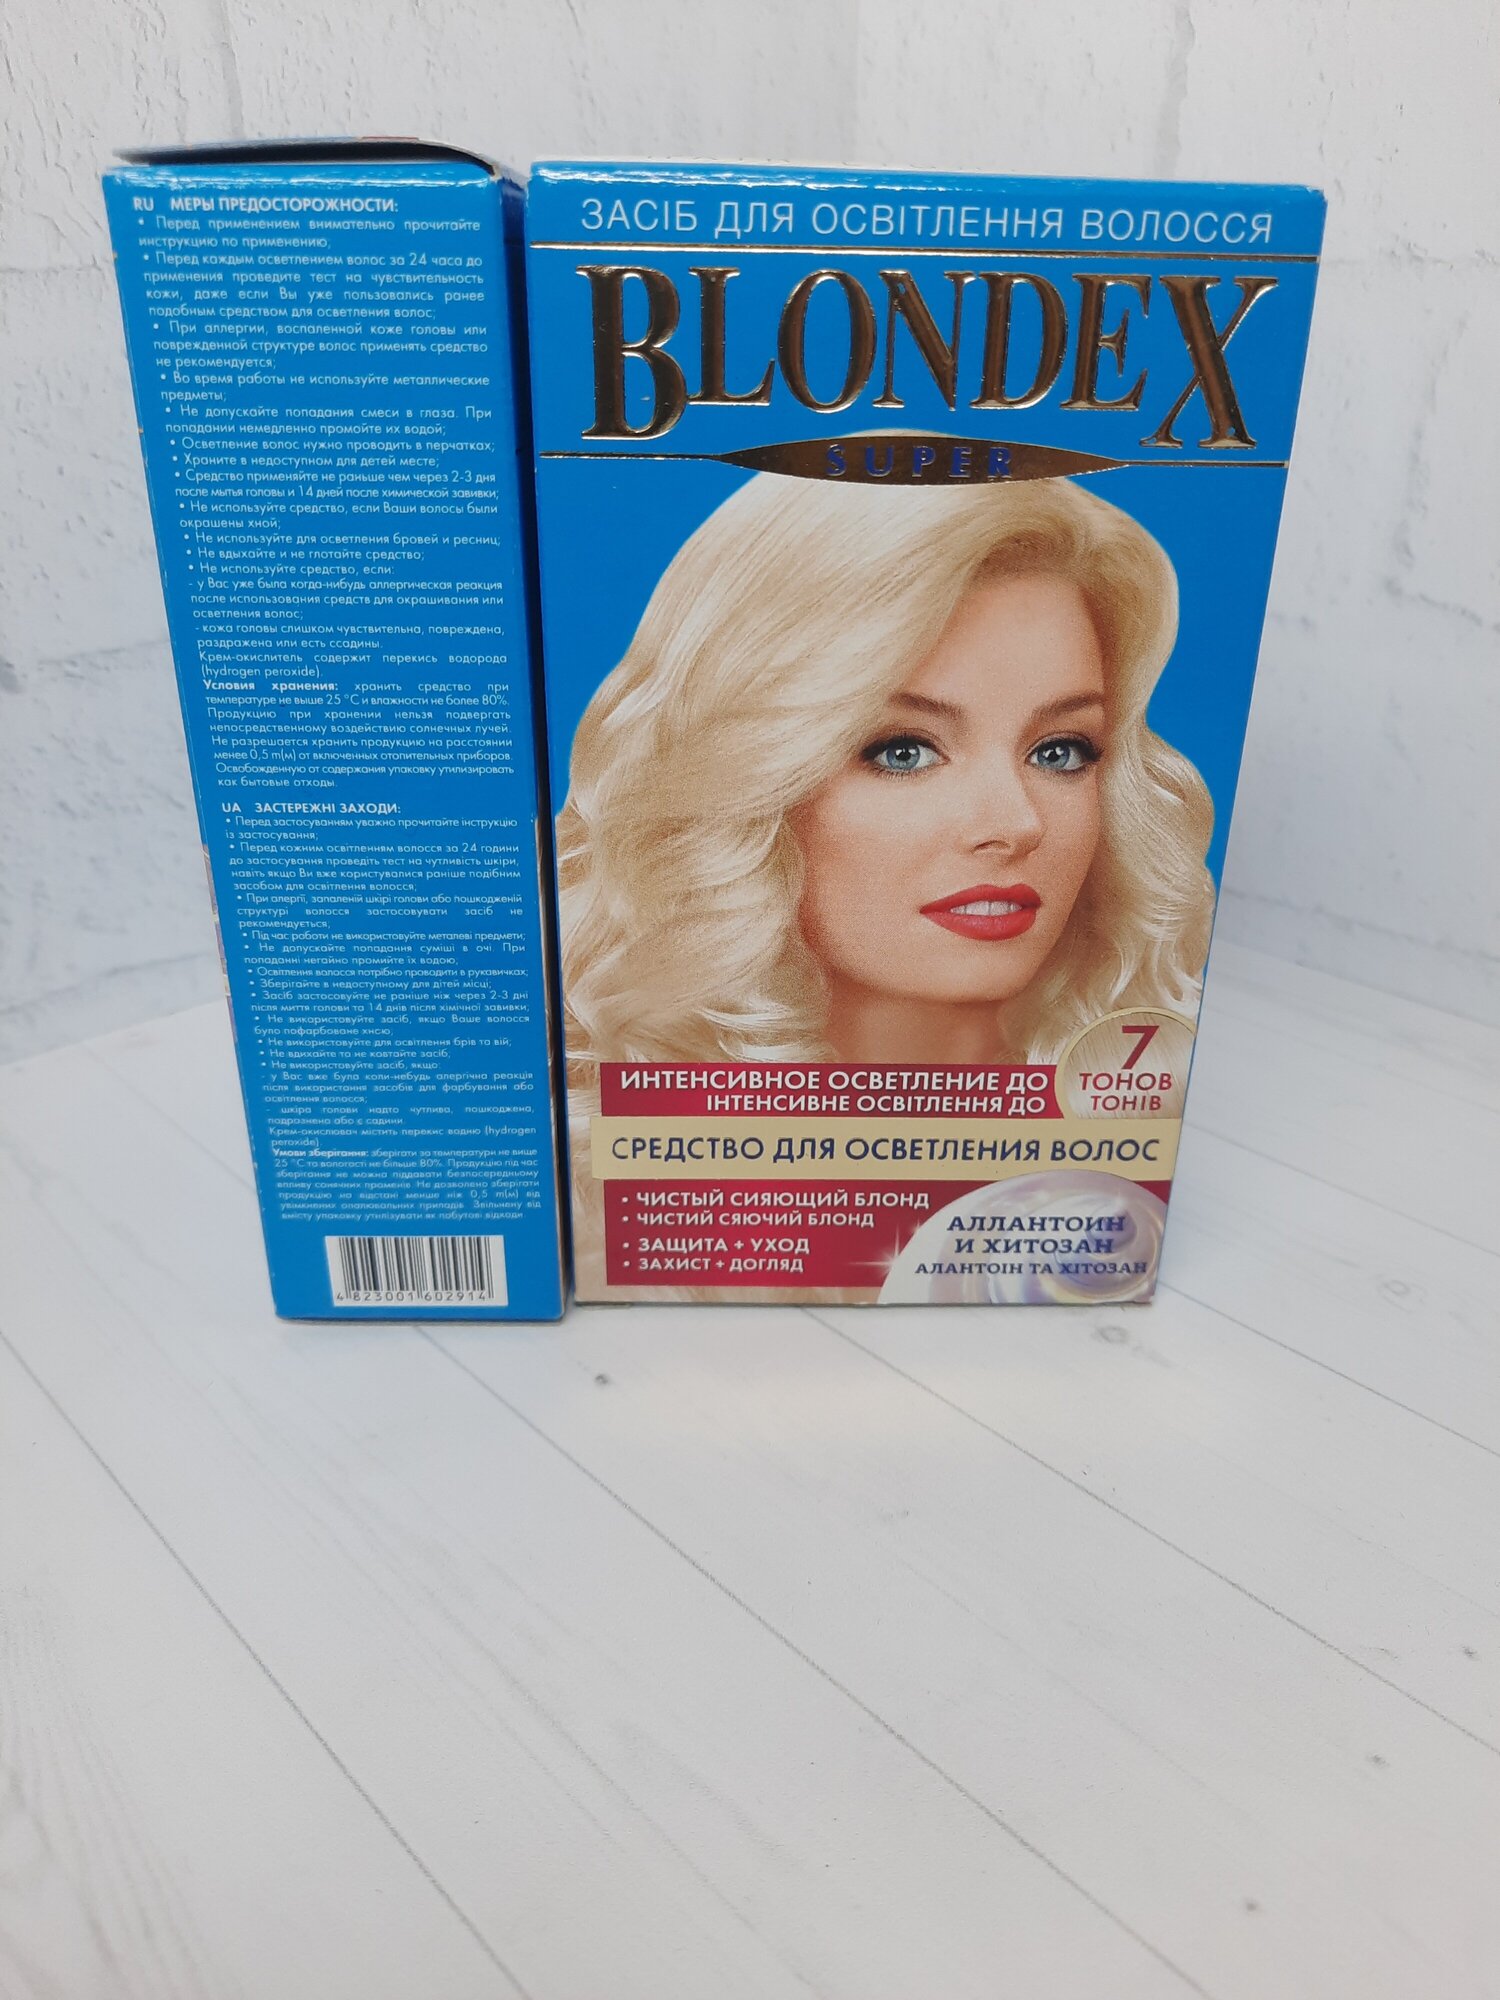 Blondex Super средство для осветления волос "Блондекс-супер NEW" с хитозаном Supermash